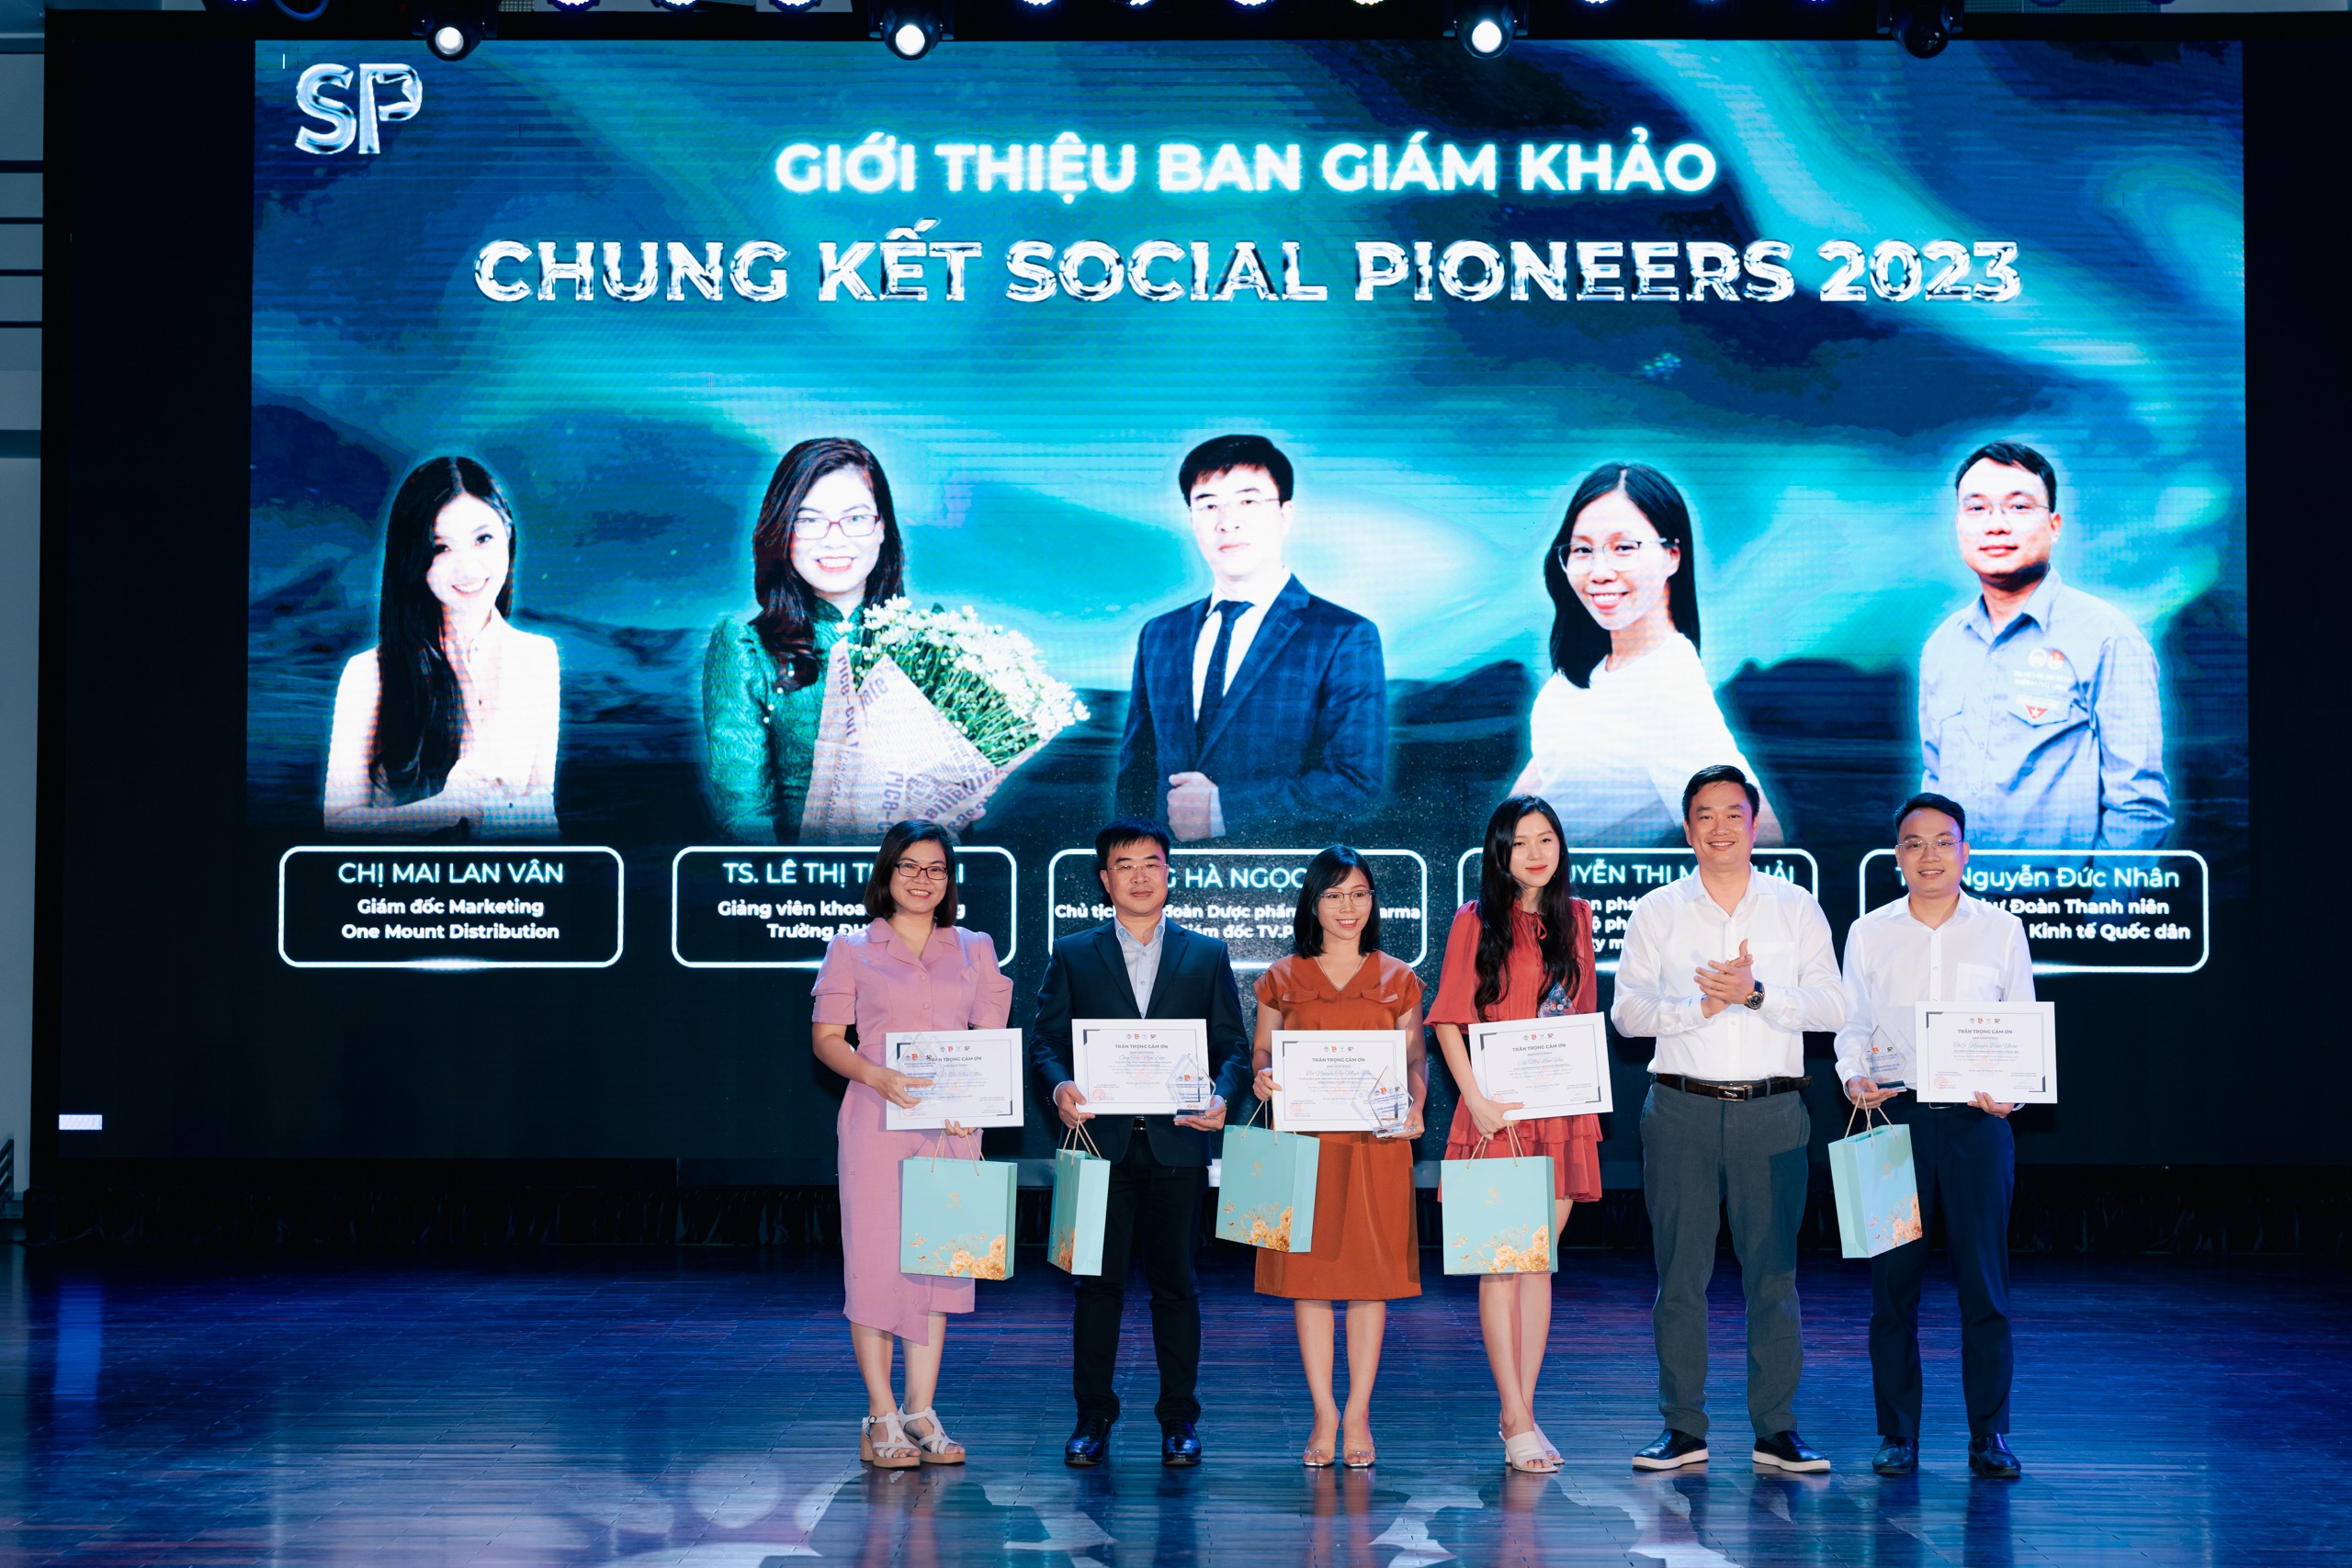 Lãnh đạo Khoa Marketing trao tặng kỷ niệm chương cho Ban giám khảo Chung kết